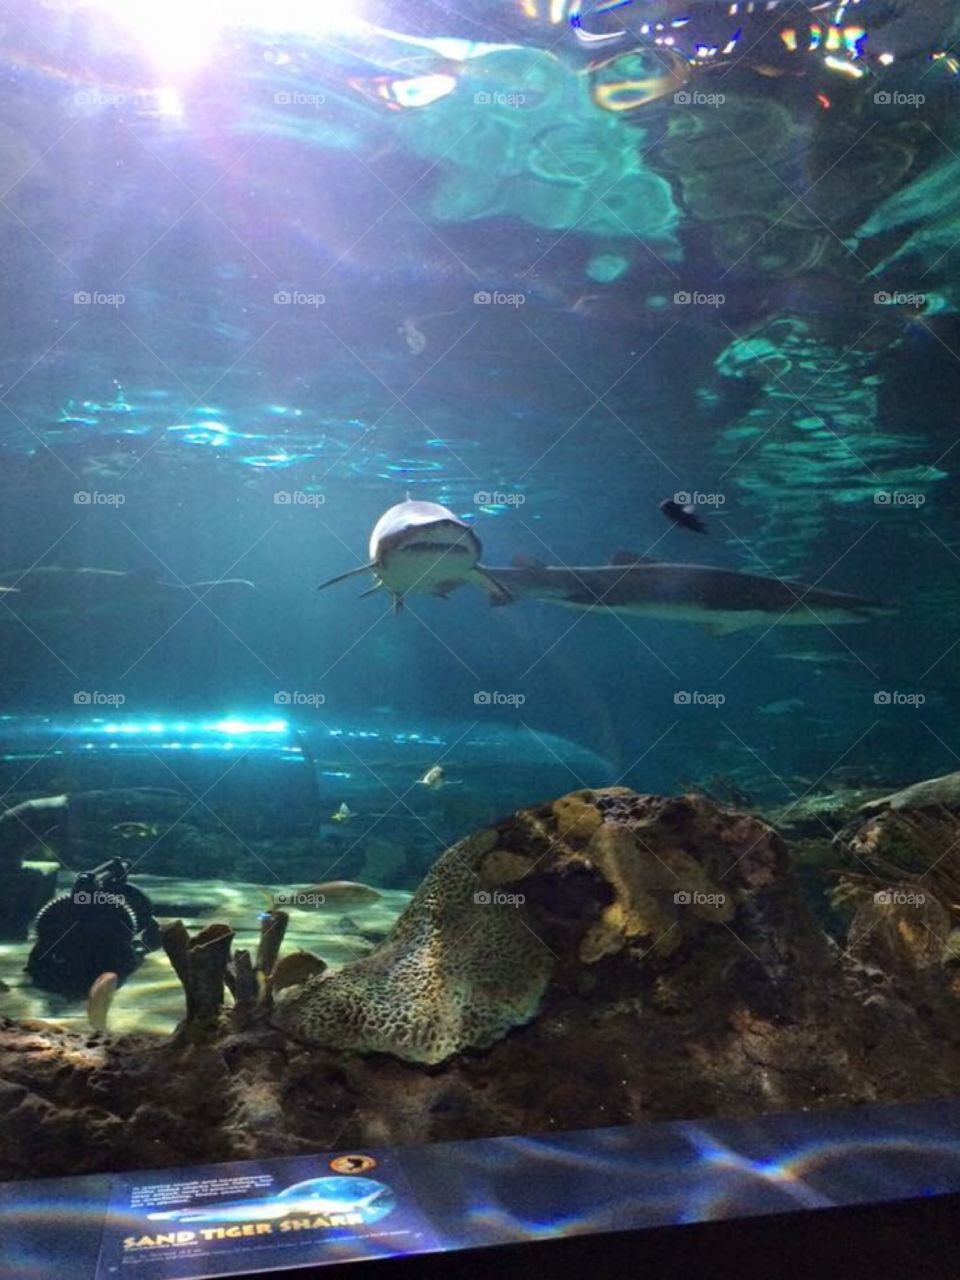 Sharks and fish at Ripley's Aquarium